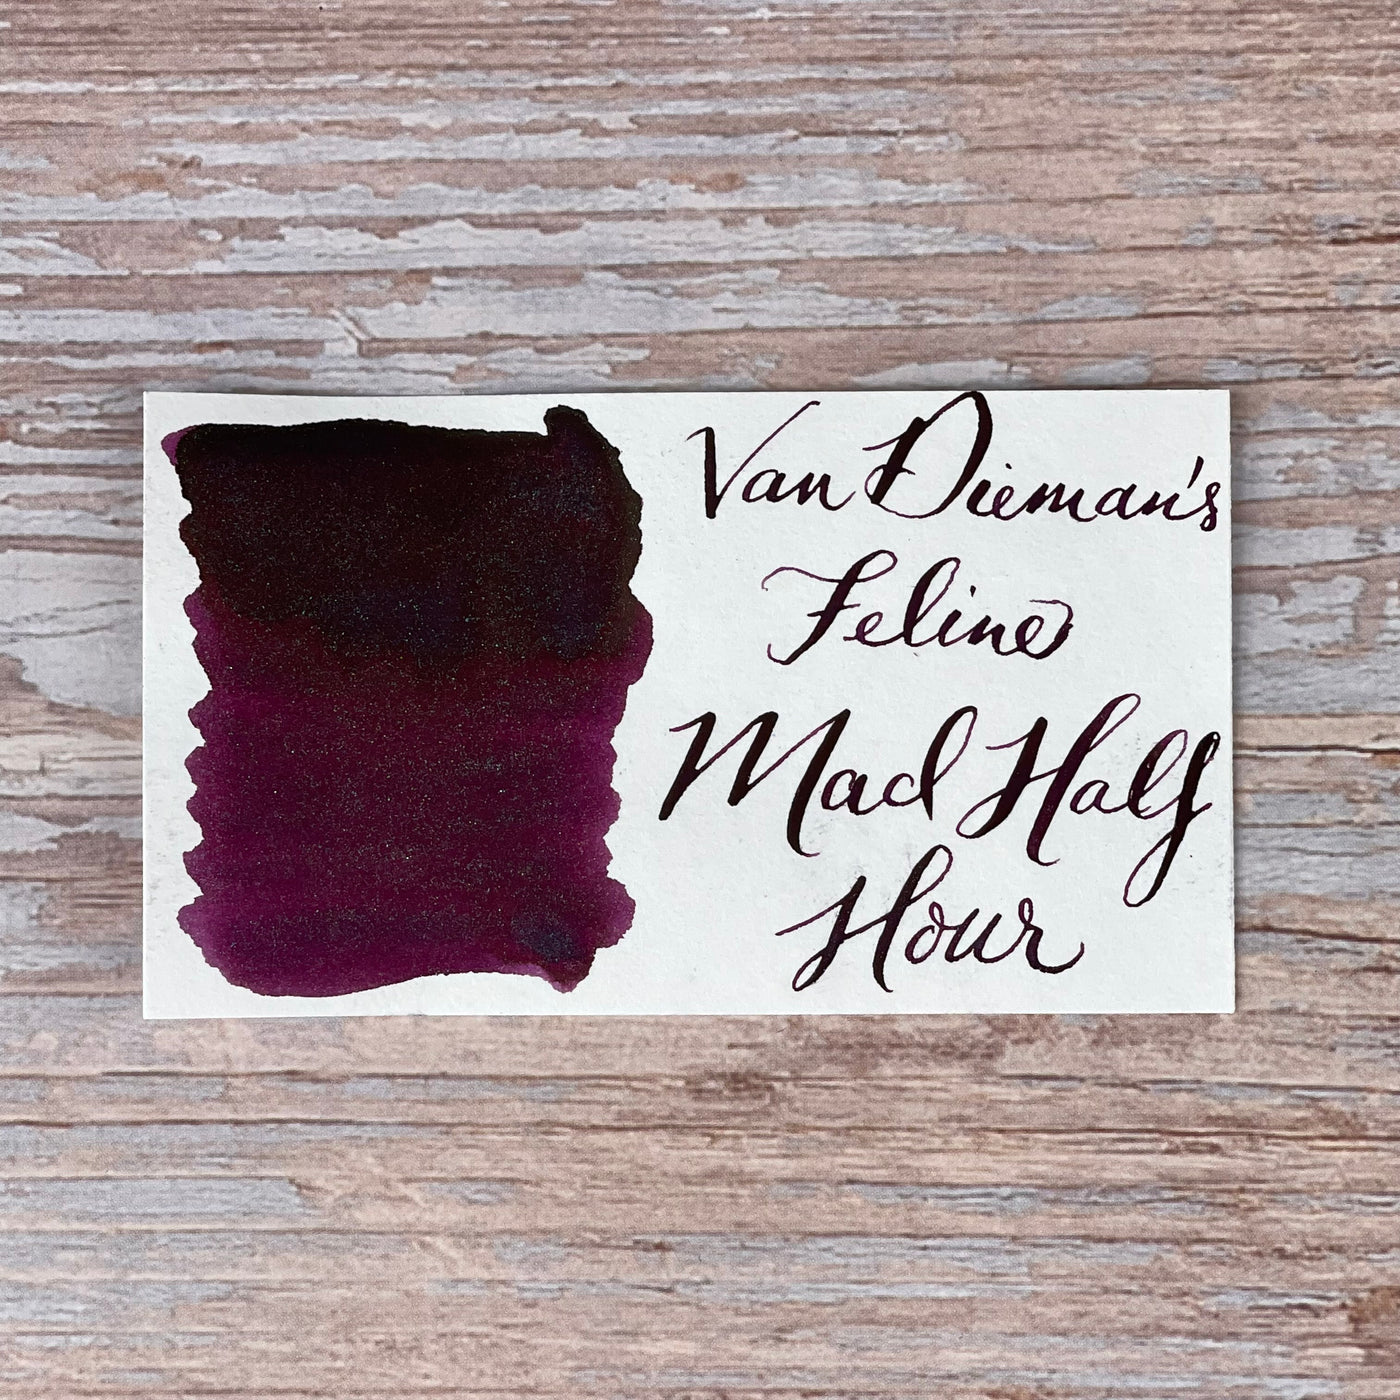 Van Dieman's Feline - Mad Half Hour Shimmering 30ml Bottled Ink